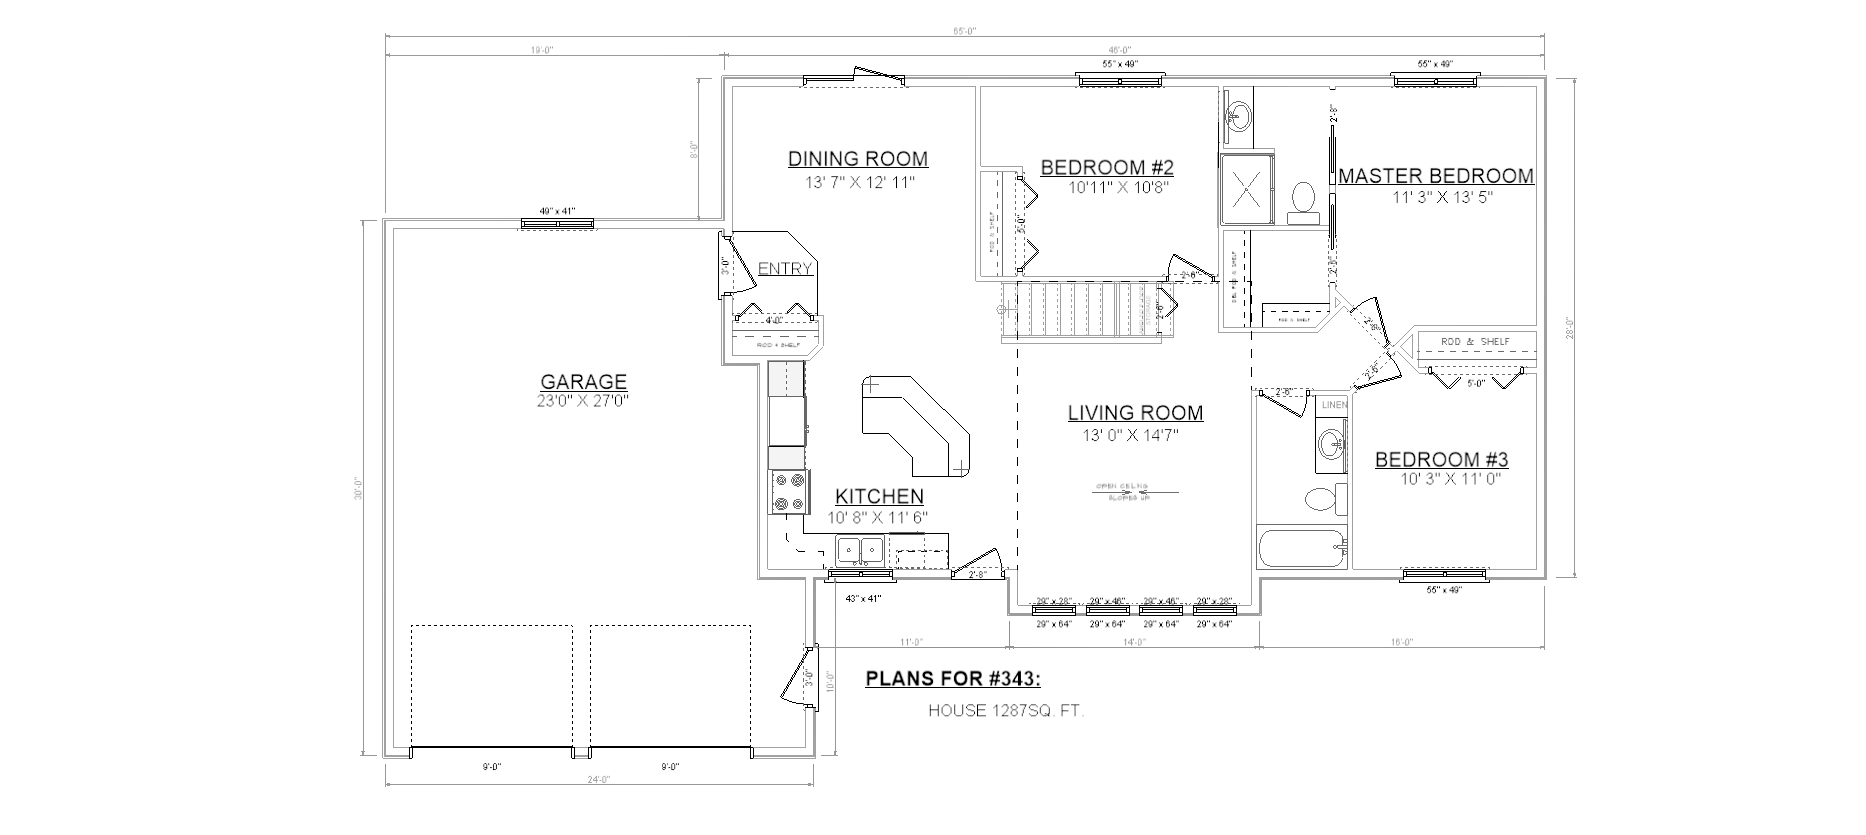 Penner Homes Floor Plan Id: 343